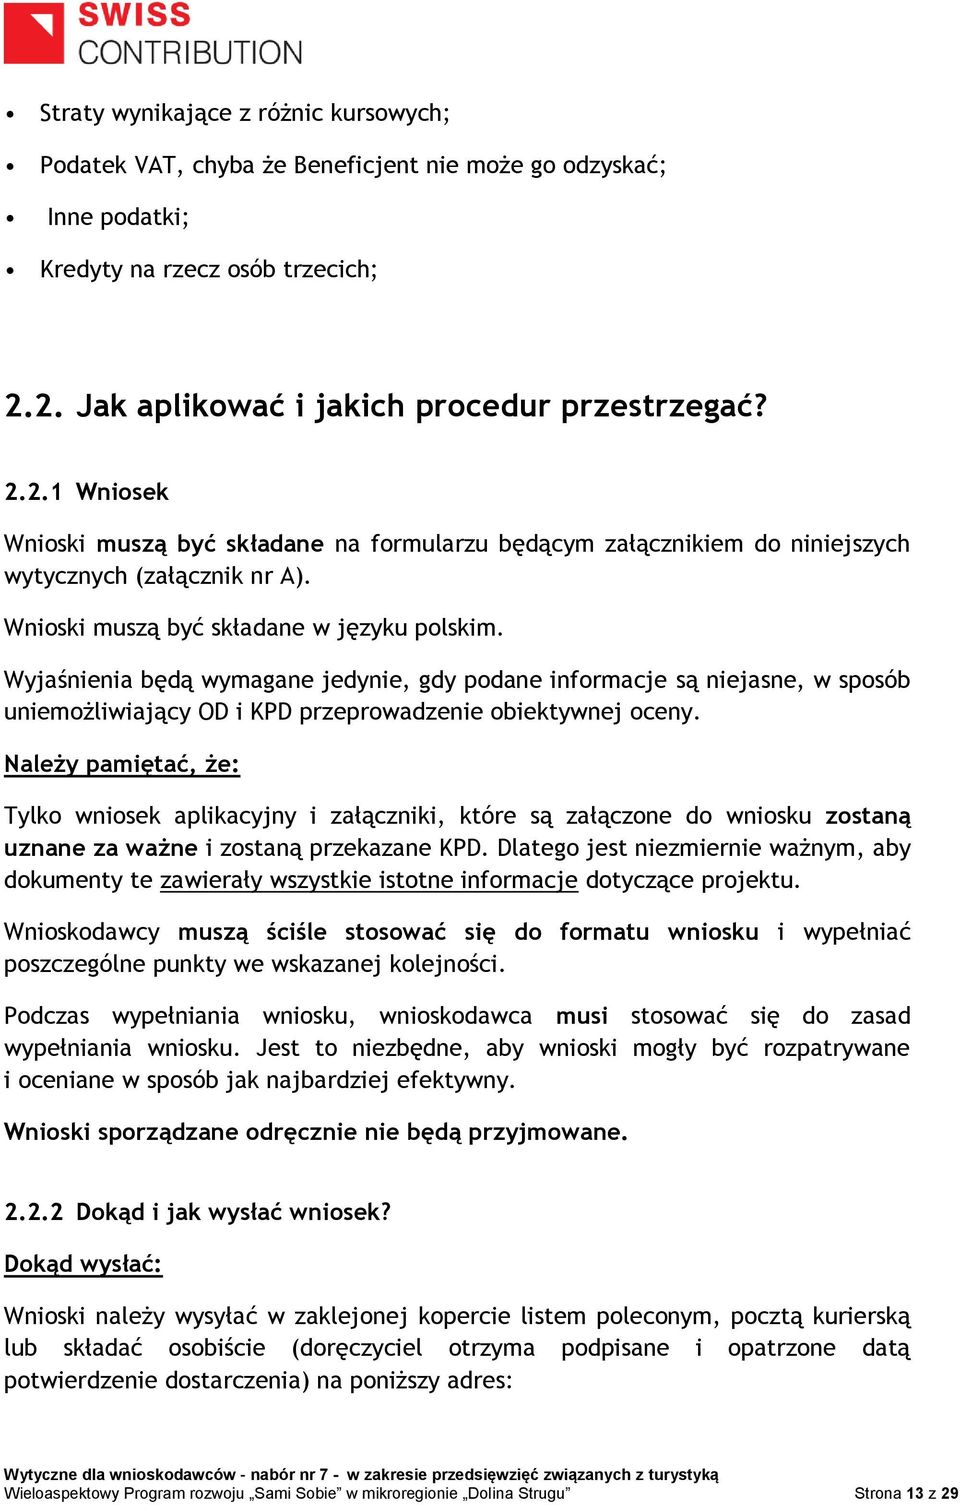 Wnioski muszą być składane w języku polskim. Wyjaśnienia będą wymagane jedynie, gdy podane informacje są niejasne, w sposób uniemożliwiający OD i KPD przeprowadzenie obiektywnej oceny.